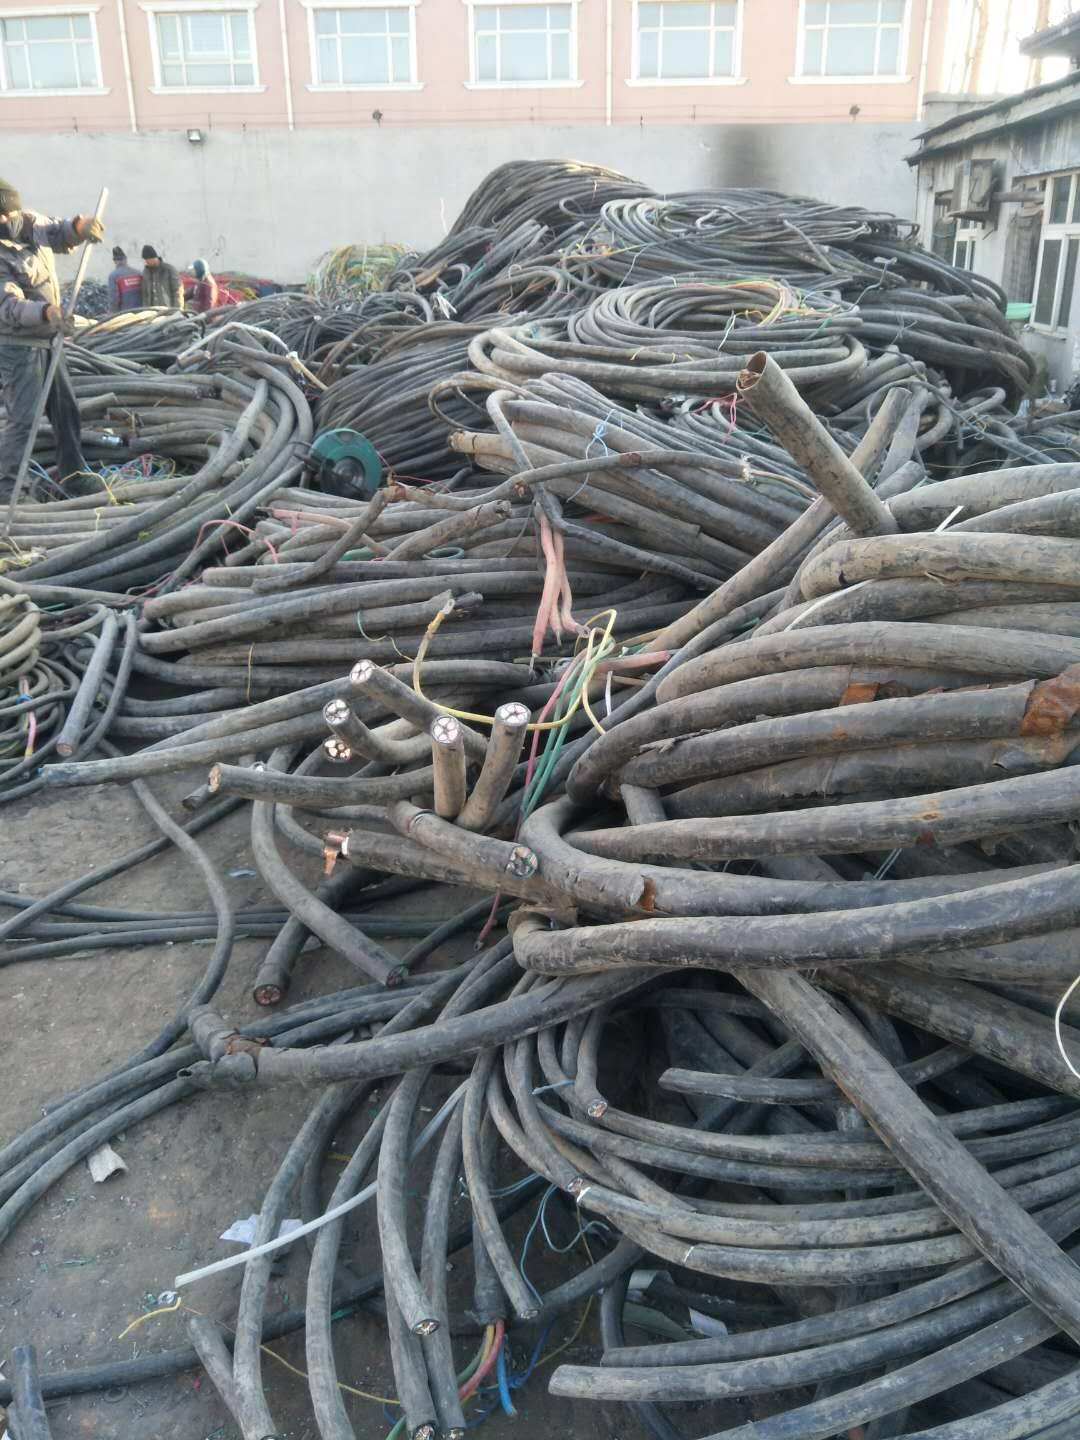 梅州梅江区工地电缆回收厂家/自备人工